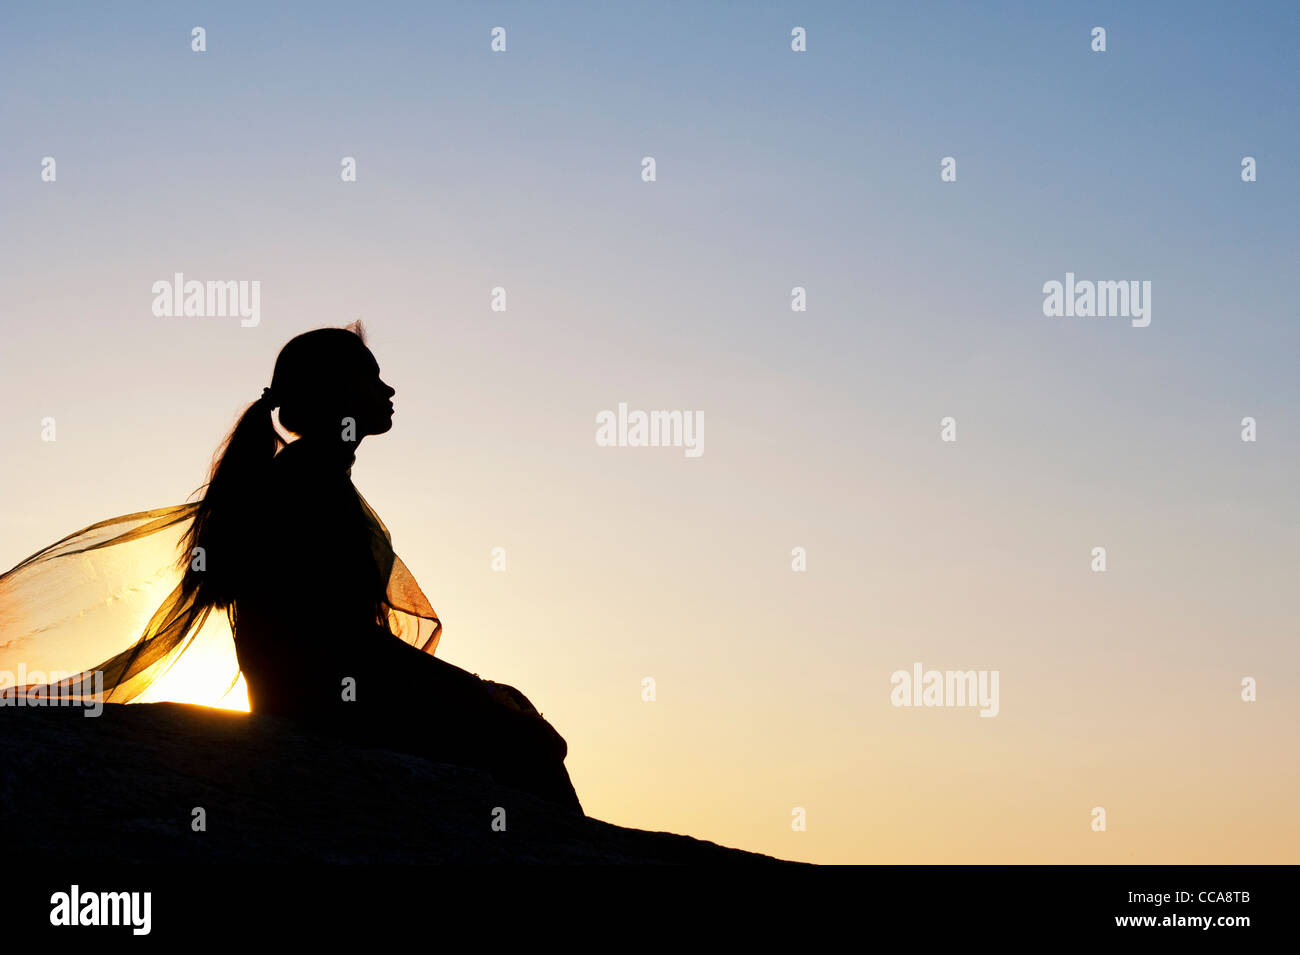 Indisches Mädchen ganz allein auf einem Stein saß bei Sonnenuntergang. Silhouette. Andhra Pradesh, Indien Stockfoto